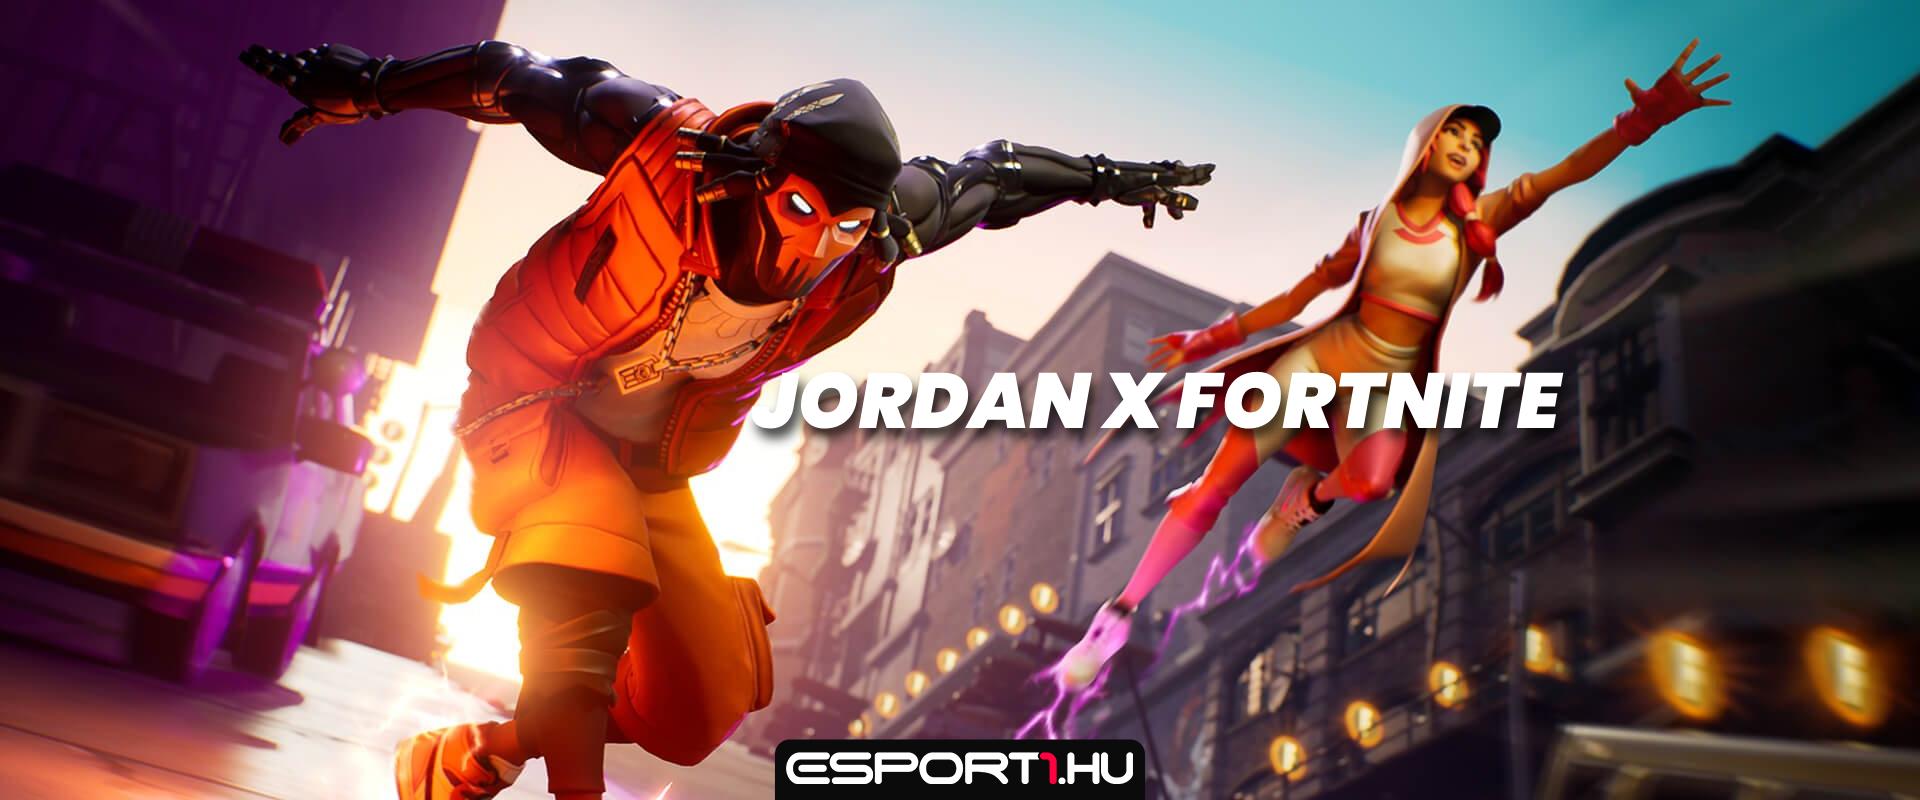 Ismét Jordan ruhák érkezhetnek a Fortnite-ba!